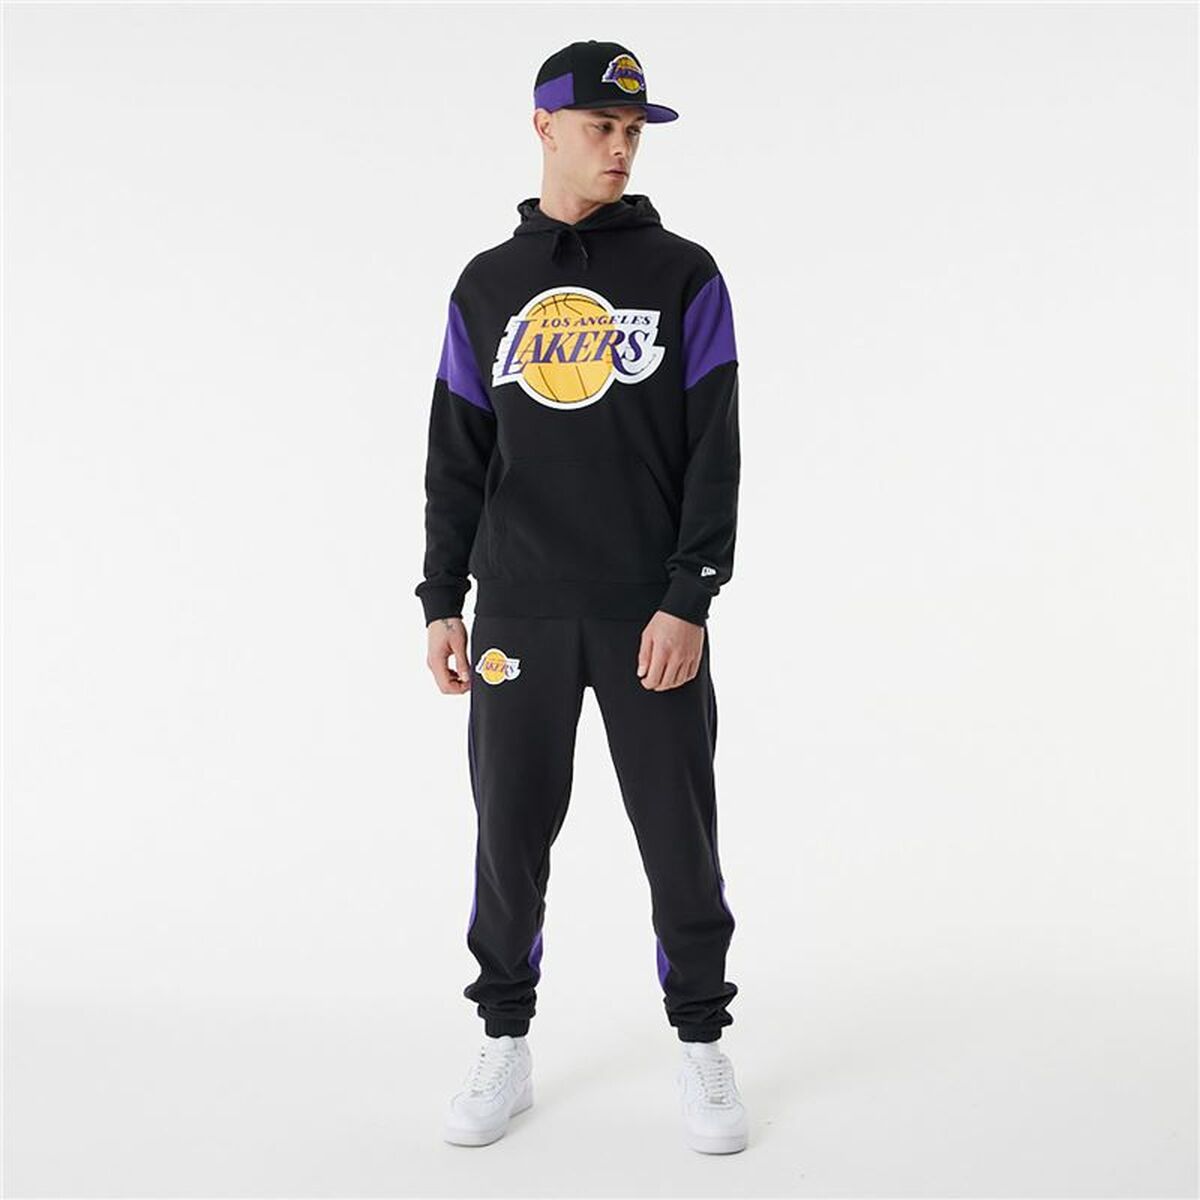 Kaufe Unisex Sweater mit Kapuze New Era NBA Colour Insert LA Lakers Schwarz bei AWK Flagship um € 70.00